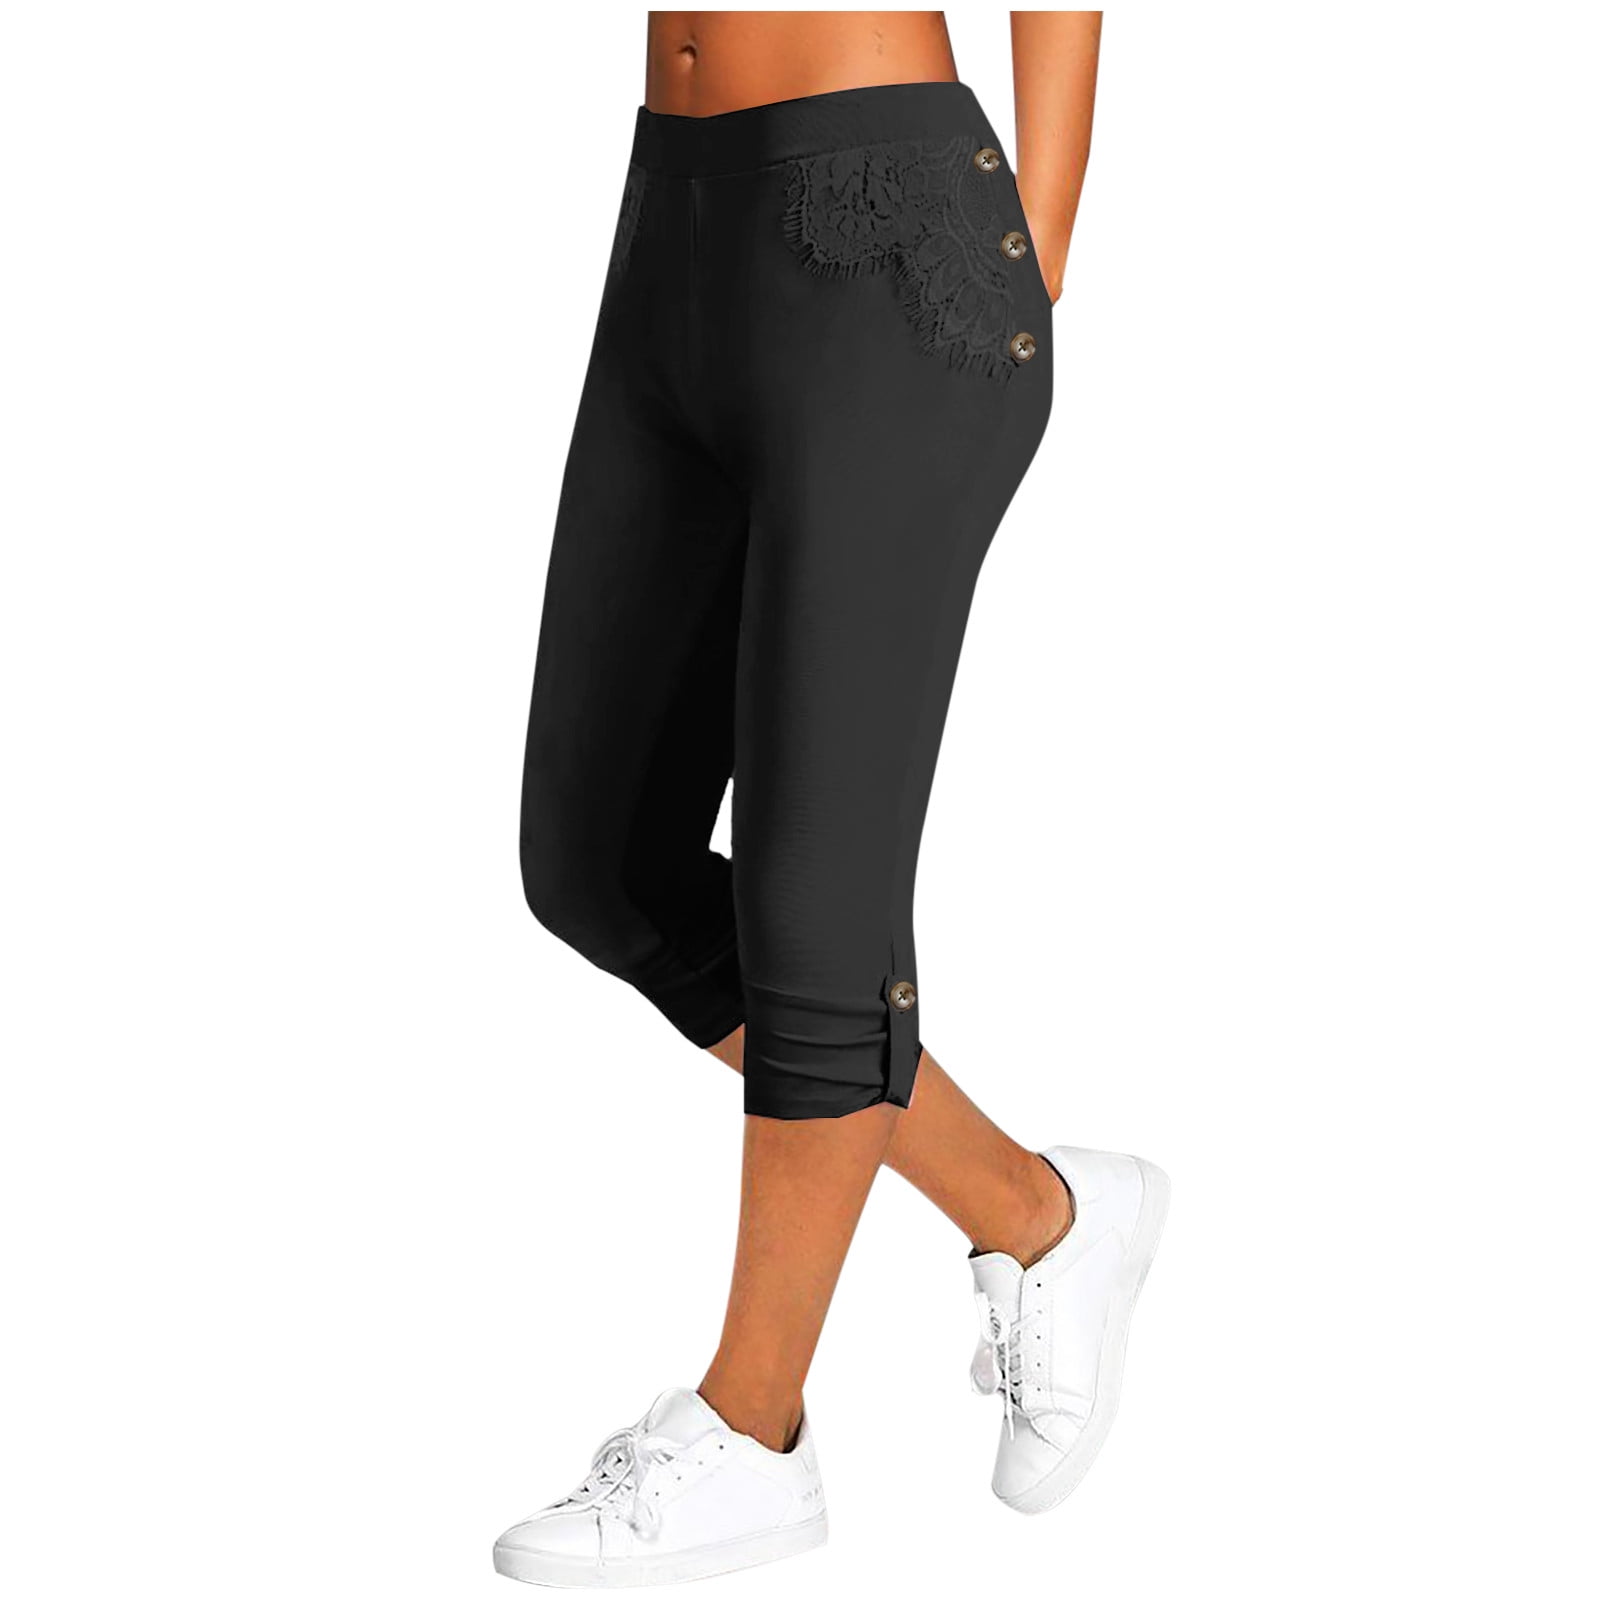 Erwazi Women's Capri Leggings High Waisted Knee Length Yoga Pants ...